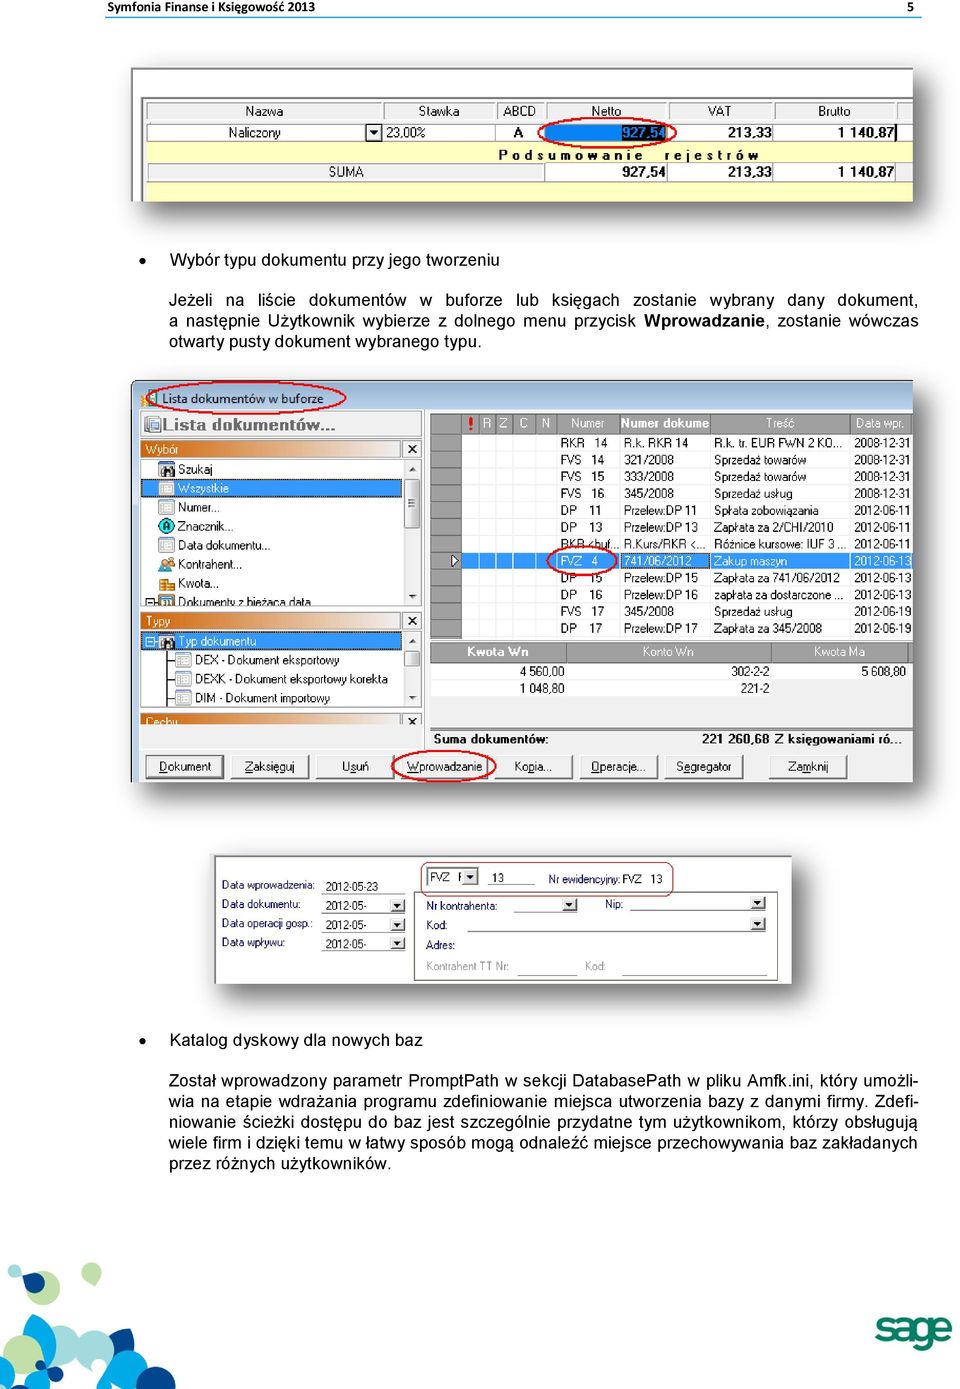 Katalog dyskowy dla nowych baz Został wprowadzony parametr PromptPath w sekcji DatabasePath w pliku Amfk.